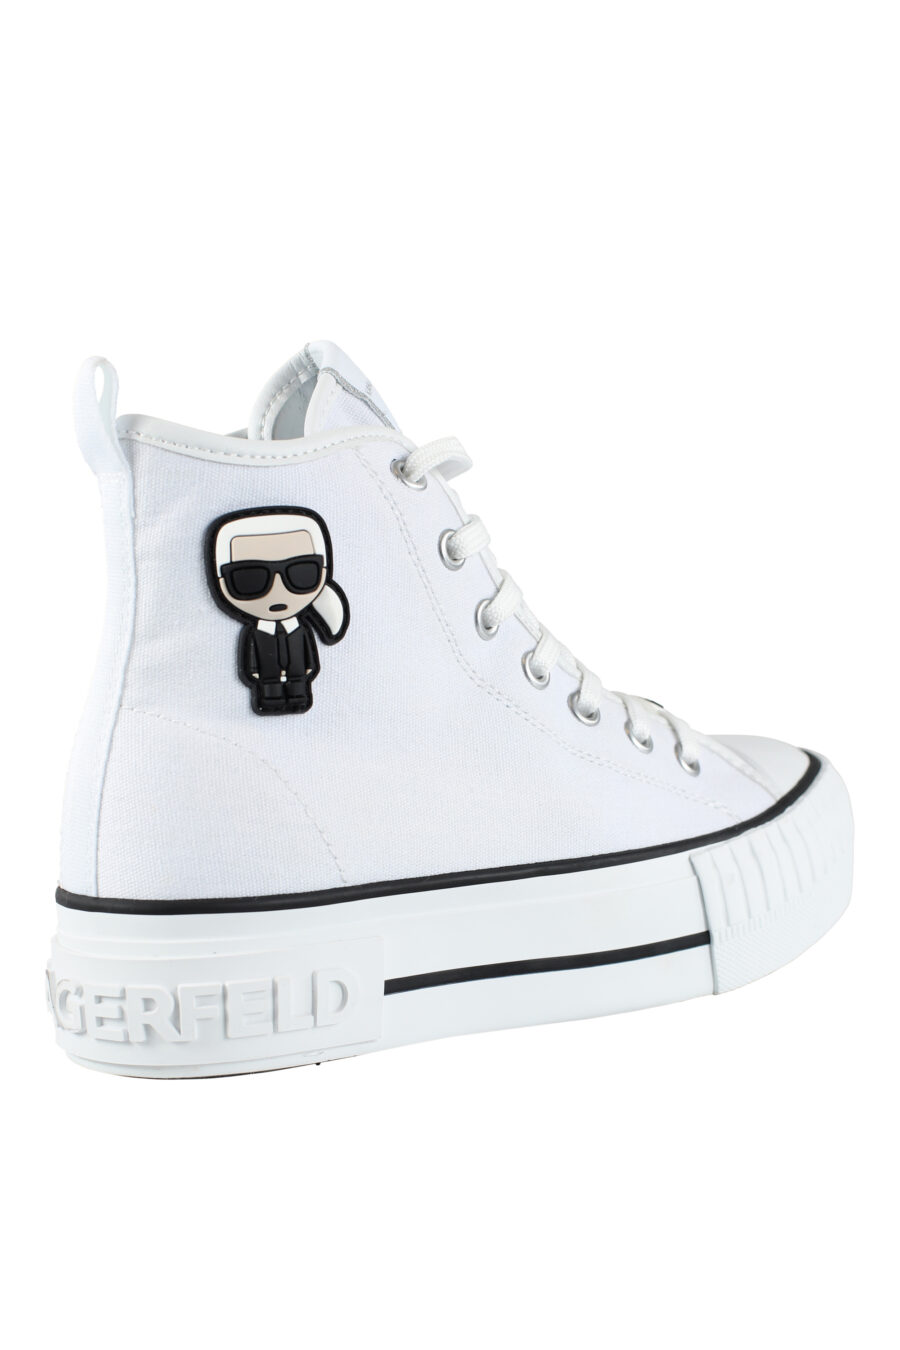 Zapatillas altas blancas estilo converse con logo "karl" en goma - IMG 9571